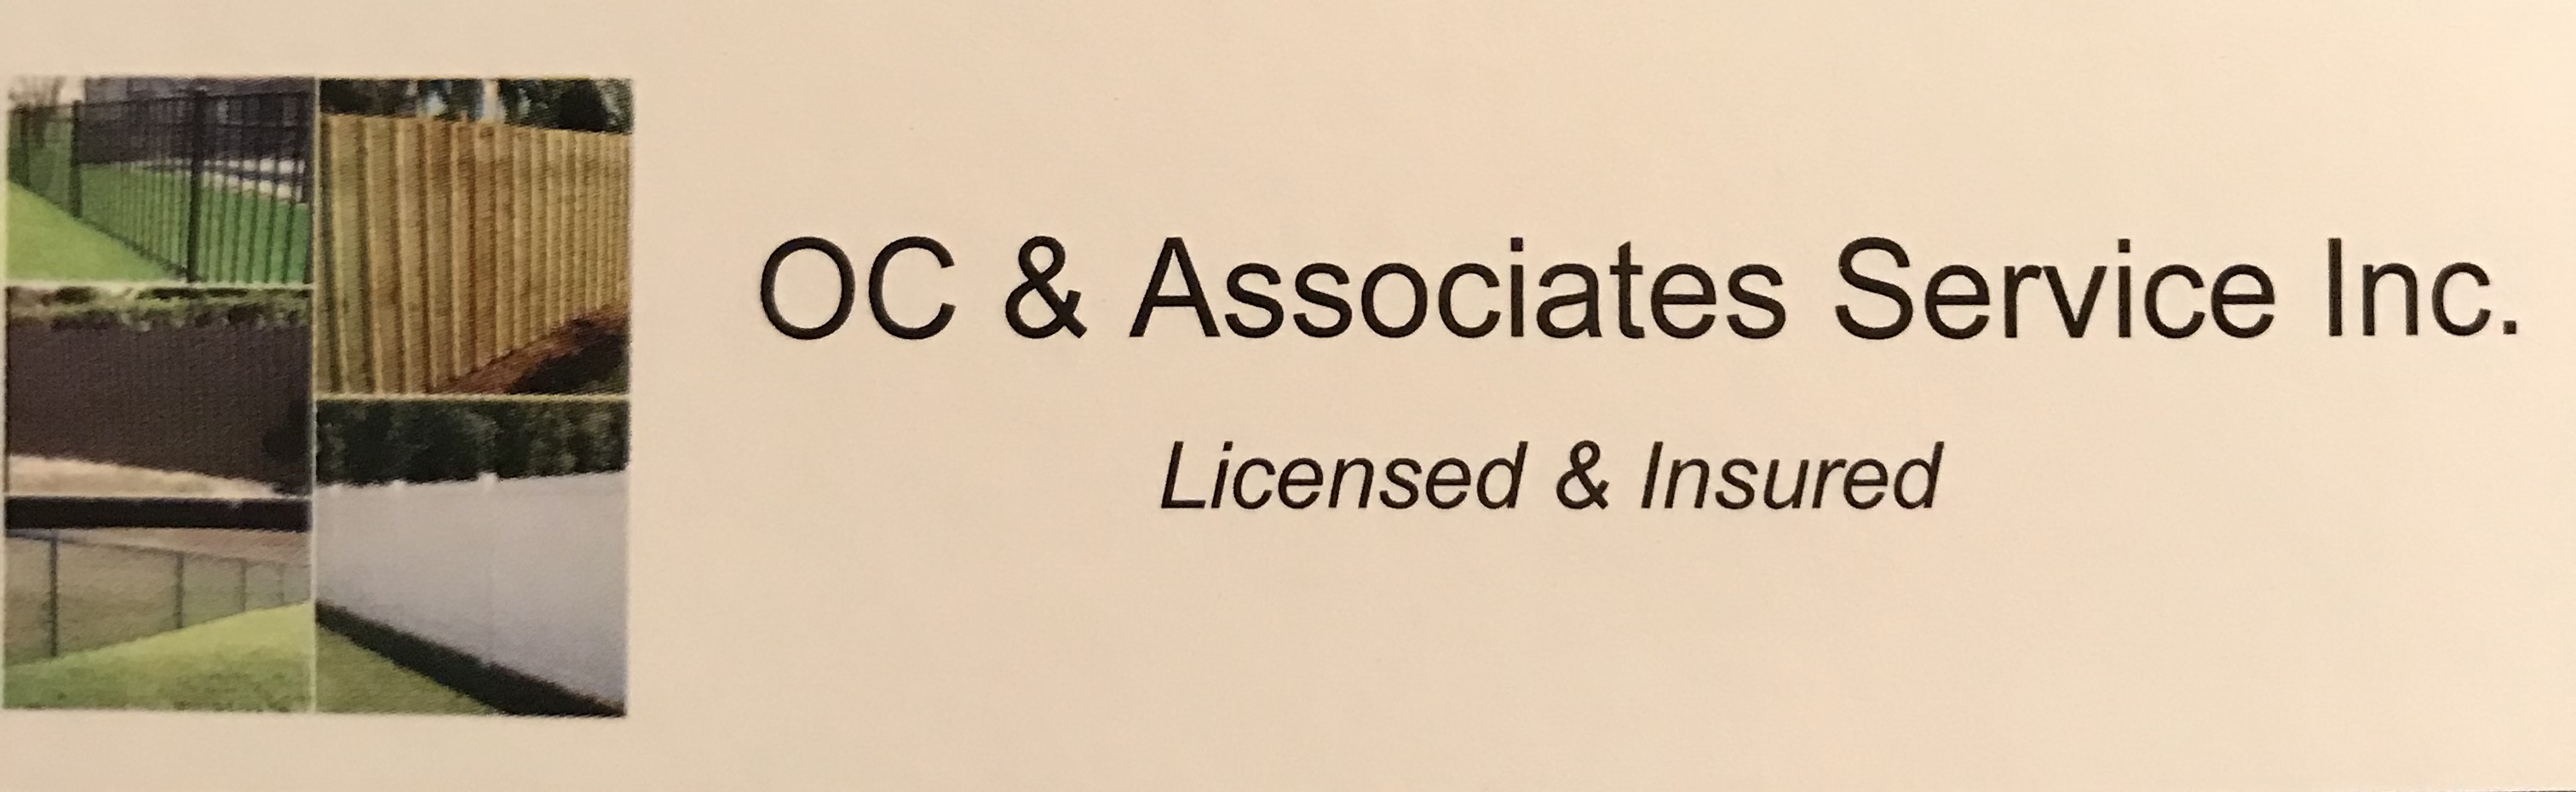 OC and Associates Service, Inc. Logo